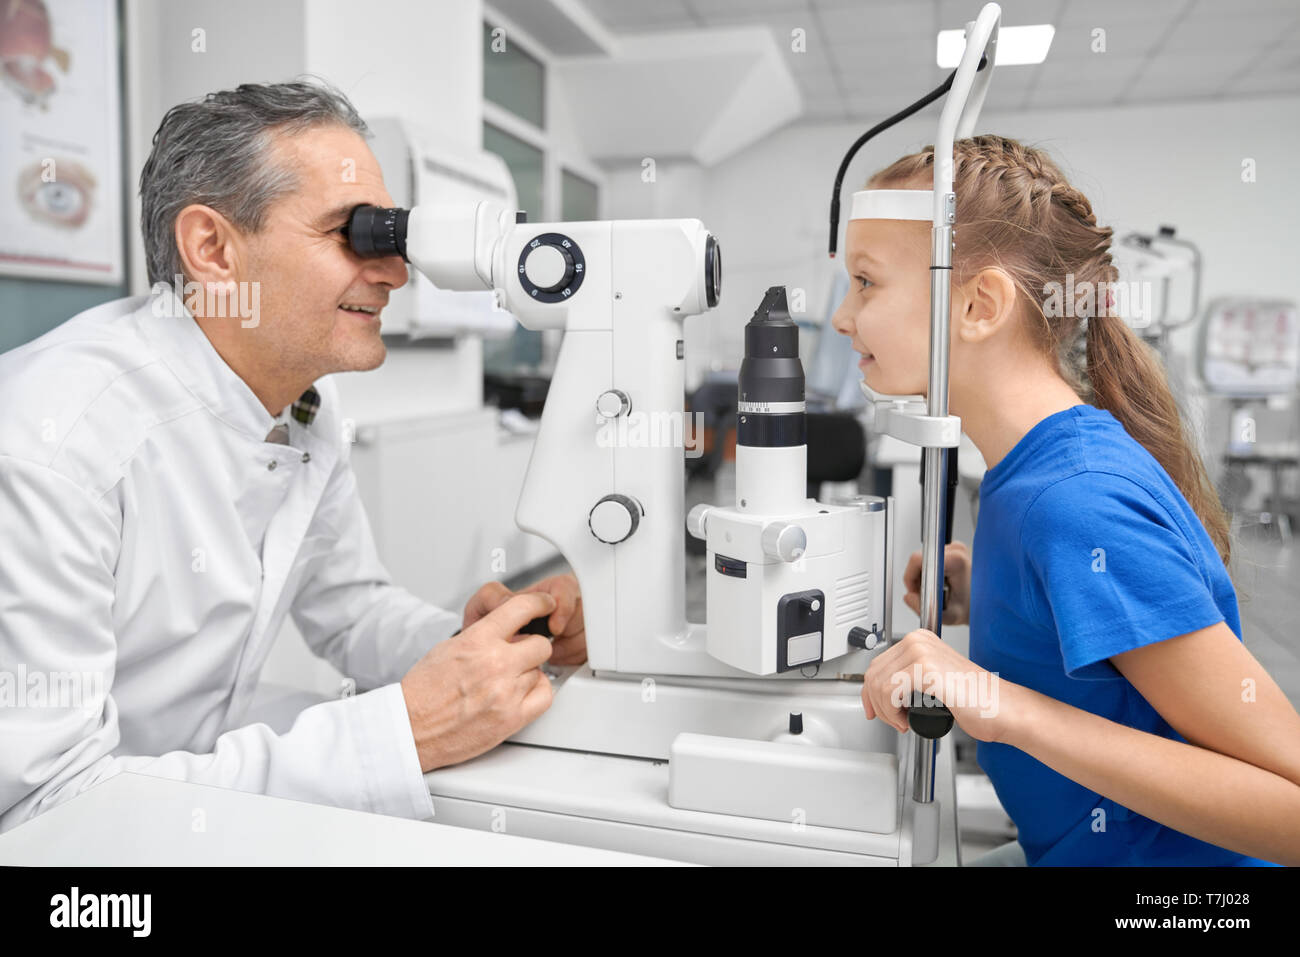 Professionelle Arzt Augenarzt die Augen des hübschen Patienten mit der spaltlampe. Augenarzt in Weiß medizinische Fell suchen durch spezielle Ausrüstung. Konzept der gesunden Sehkraft. Stockfoto